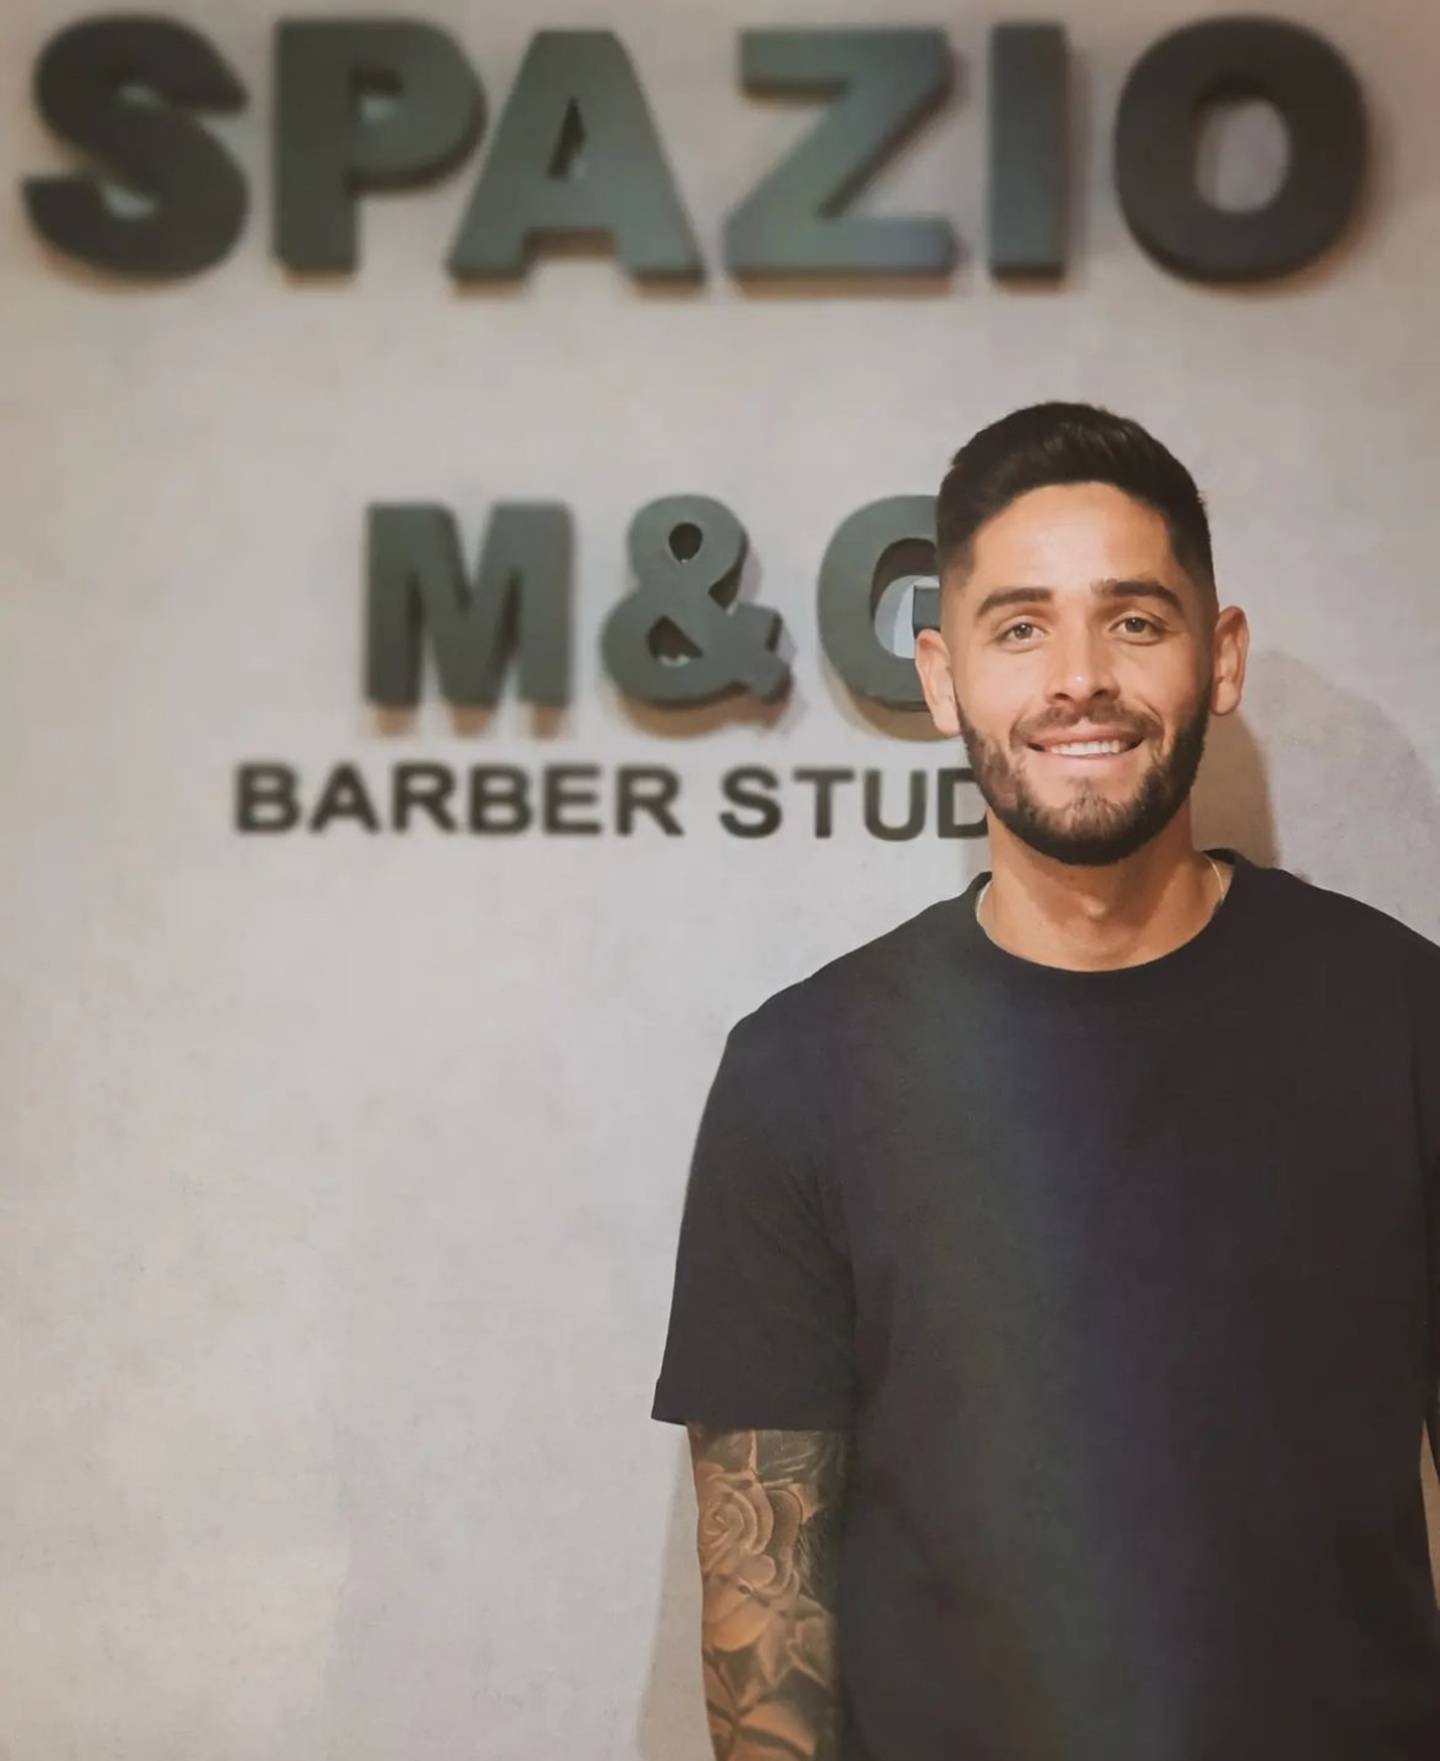 Spazio M&G Barber Studio es el primer negocio propio de Jonathan Moya. El futbolista de Liga Deportiva Alajuelense buscó asesoría para invertir su dinero de la mejor forma posible.